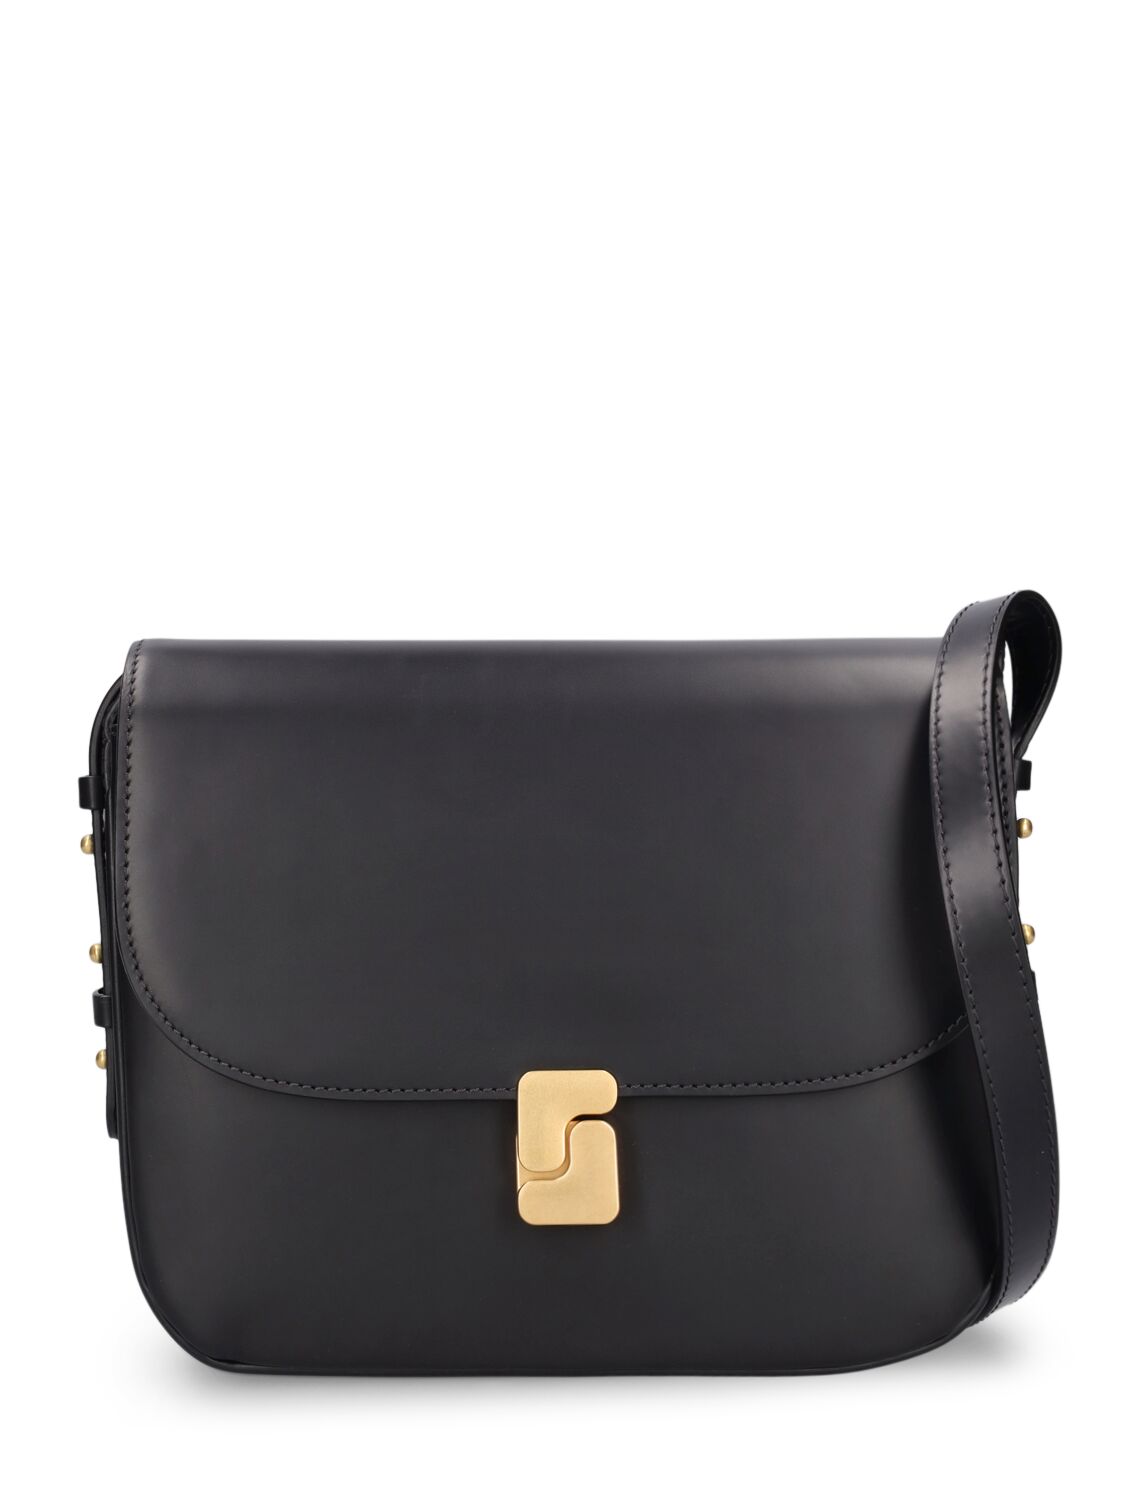 Soeur Maxi Bellissima Leather Shoulder Bag In Noir